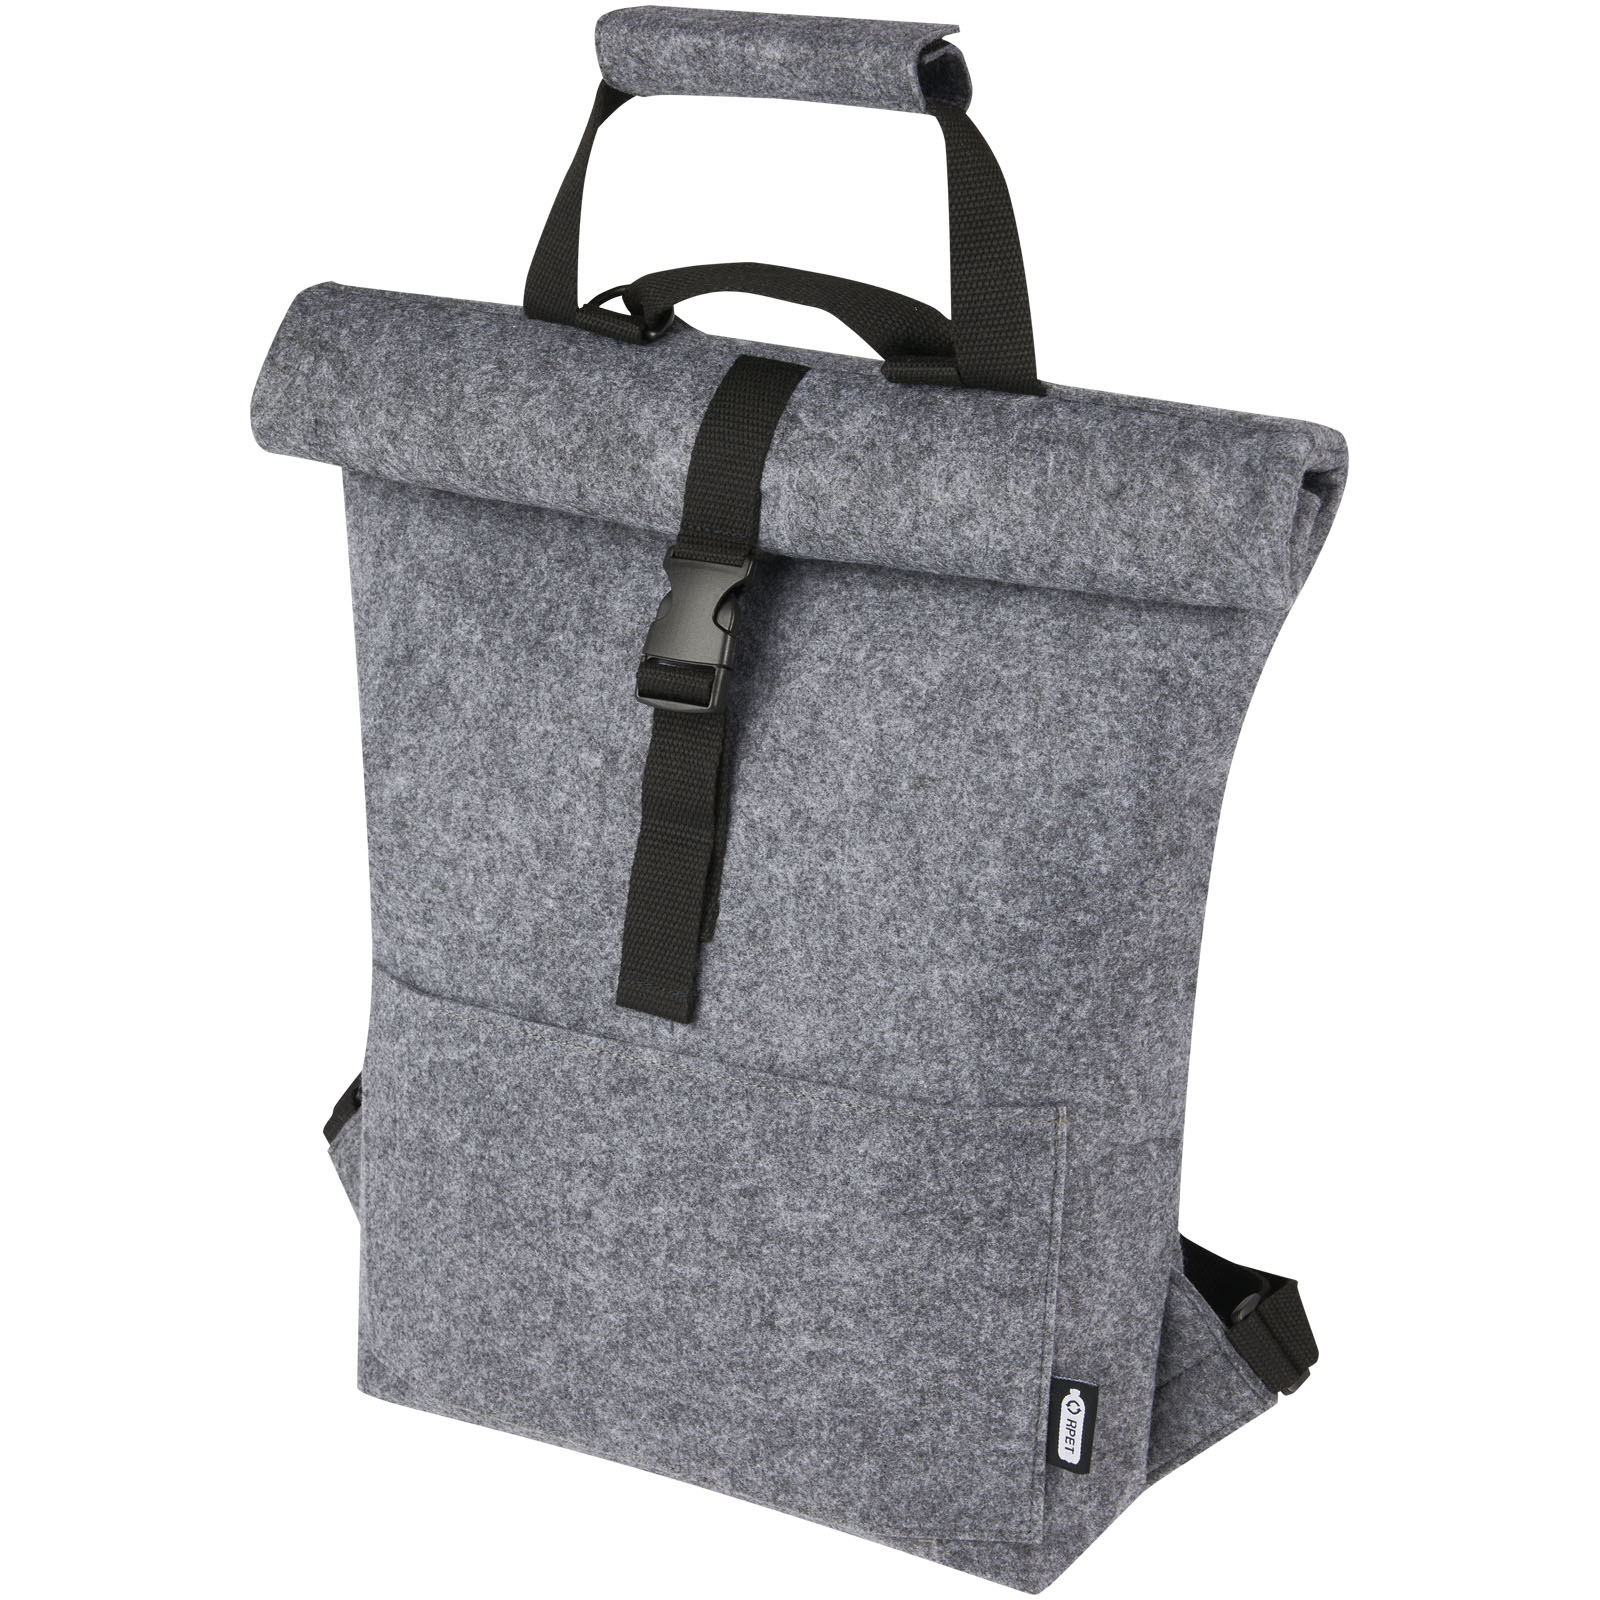 Plstěná rolovací taška na kolo MOLE z recyklovaného materiálu, 13 l - grey